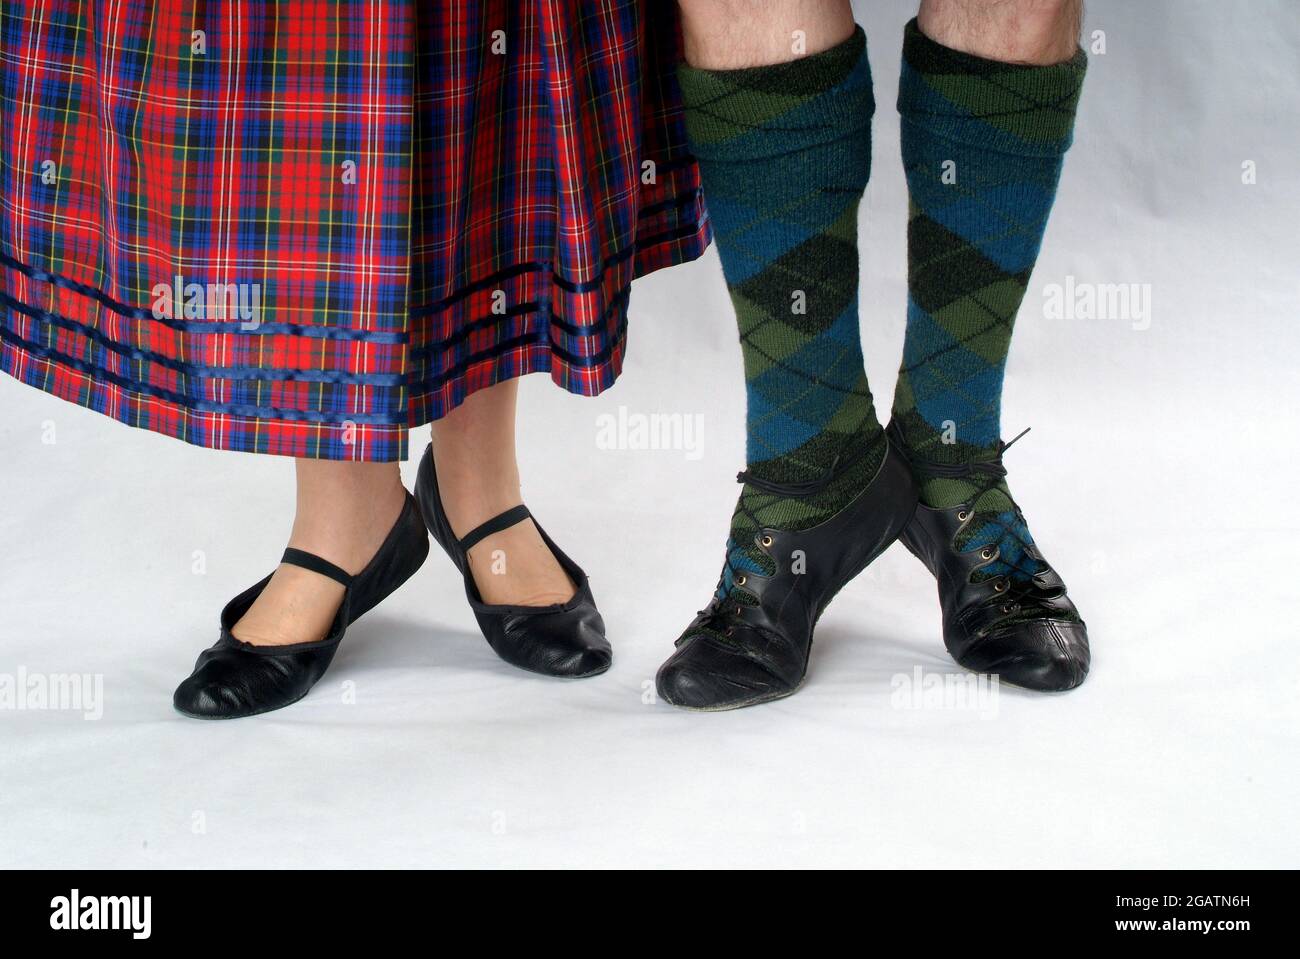 Homme et femme en couple écossais pays Dancing vêtements. Elle porte une  jupe de tartan, il porte des bas de tartan. Les deux portent des chaussures  connues sous le nom de ghillies